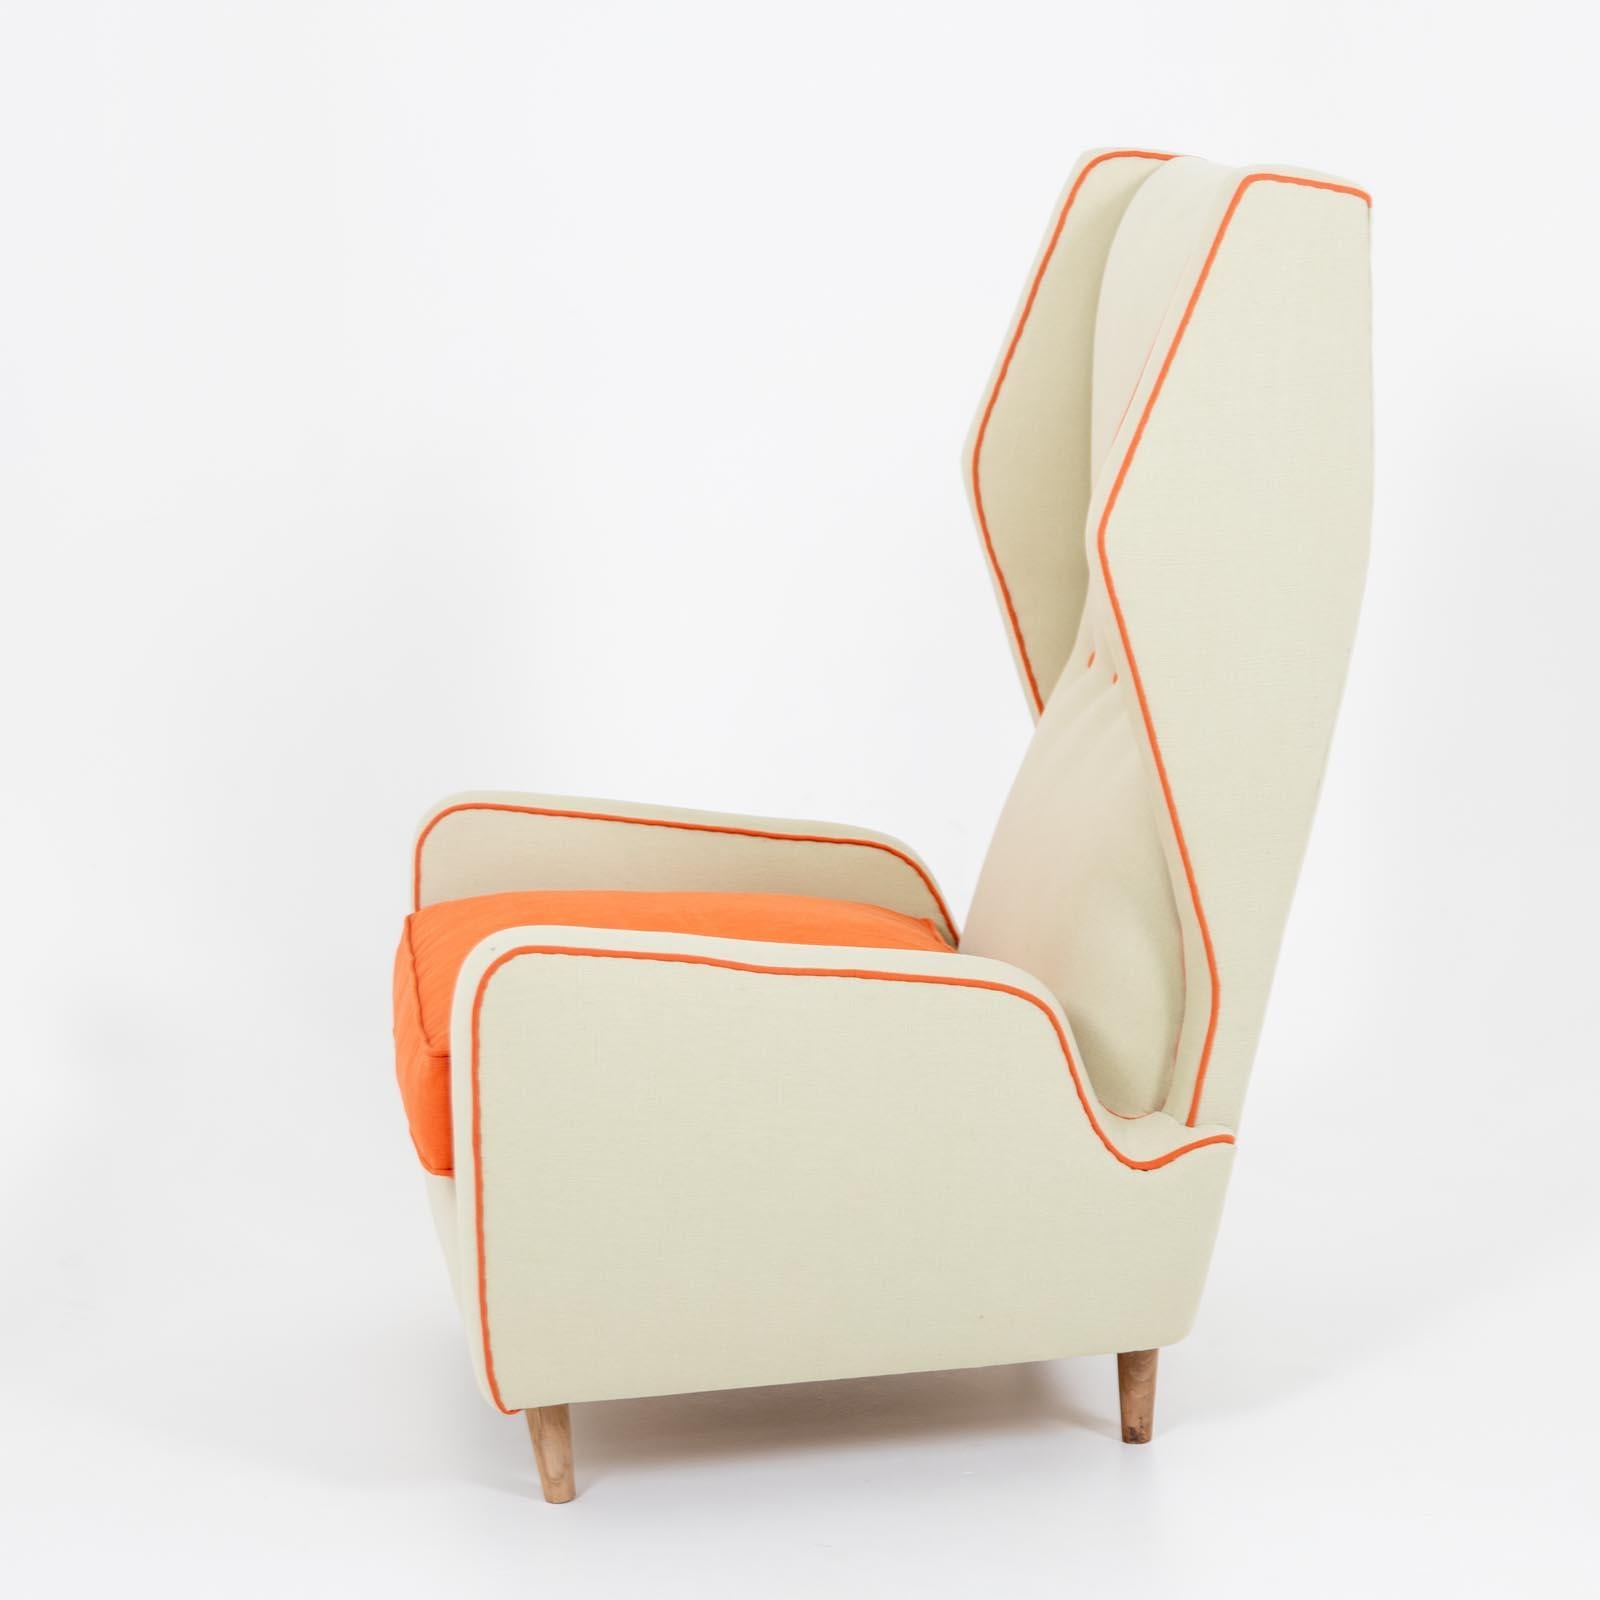 Italienischer Loungesessel aus der Mitte des Jahrhunderts mit hoher Rückenlehne und Armlehnen. Der Sessel ist hell gepolstert und wird durch orangefarbene Paspeln mit Kissen und Knöpfen akzentuiert.